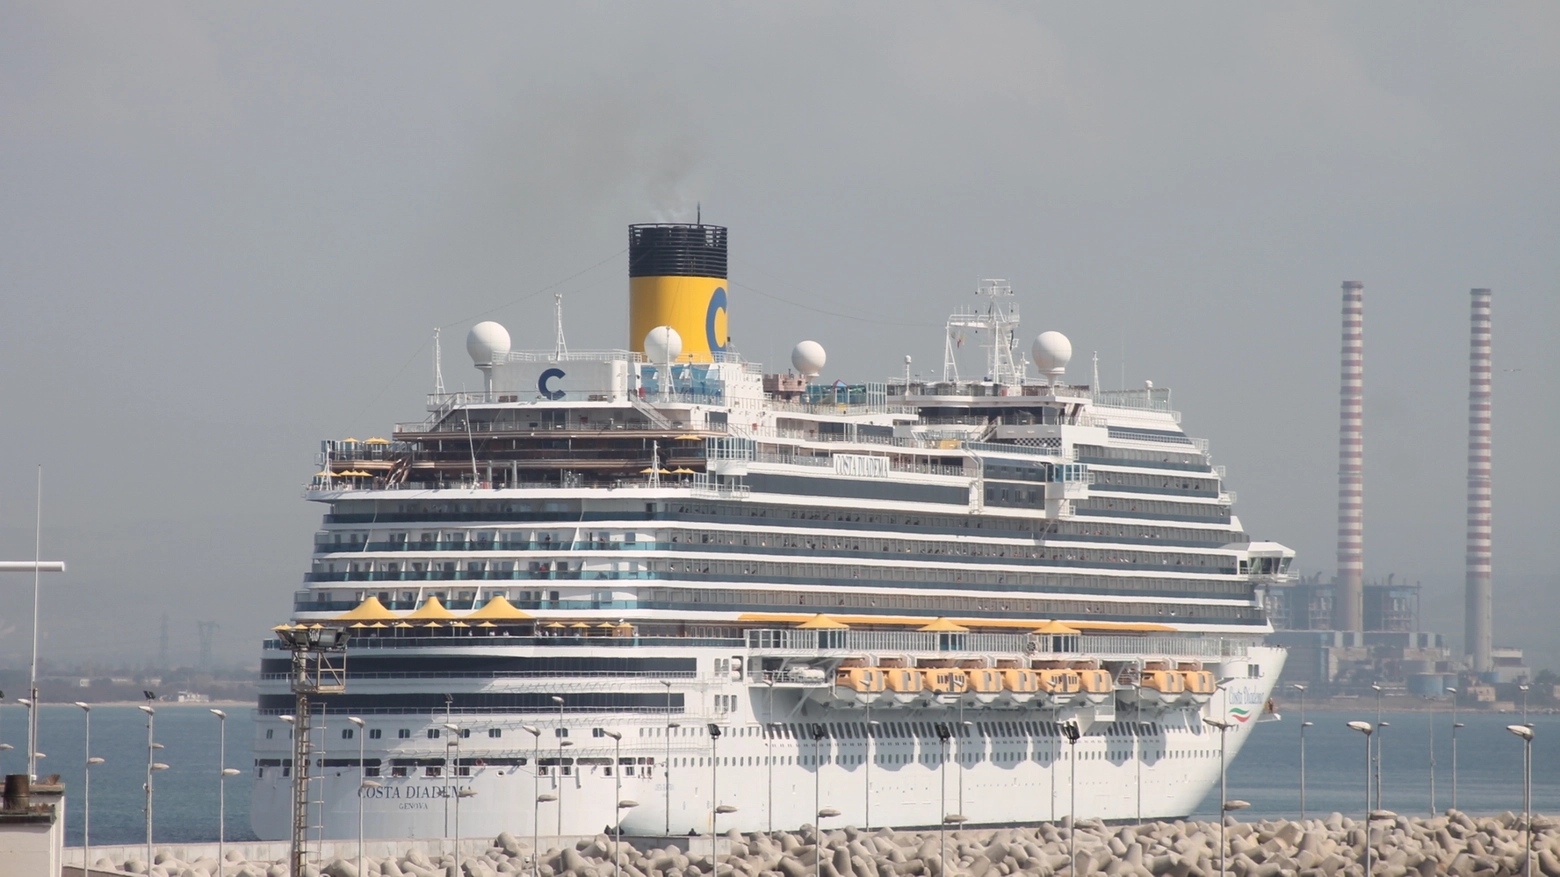 La Costa Diadema attraccata in porto a Piombino (foto Maila Papi)